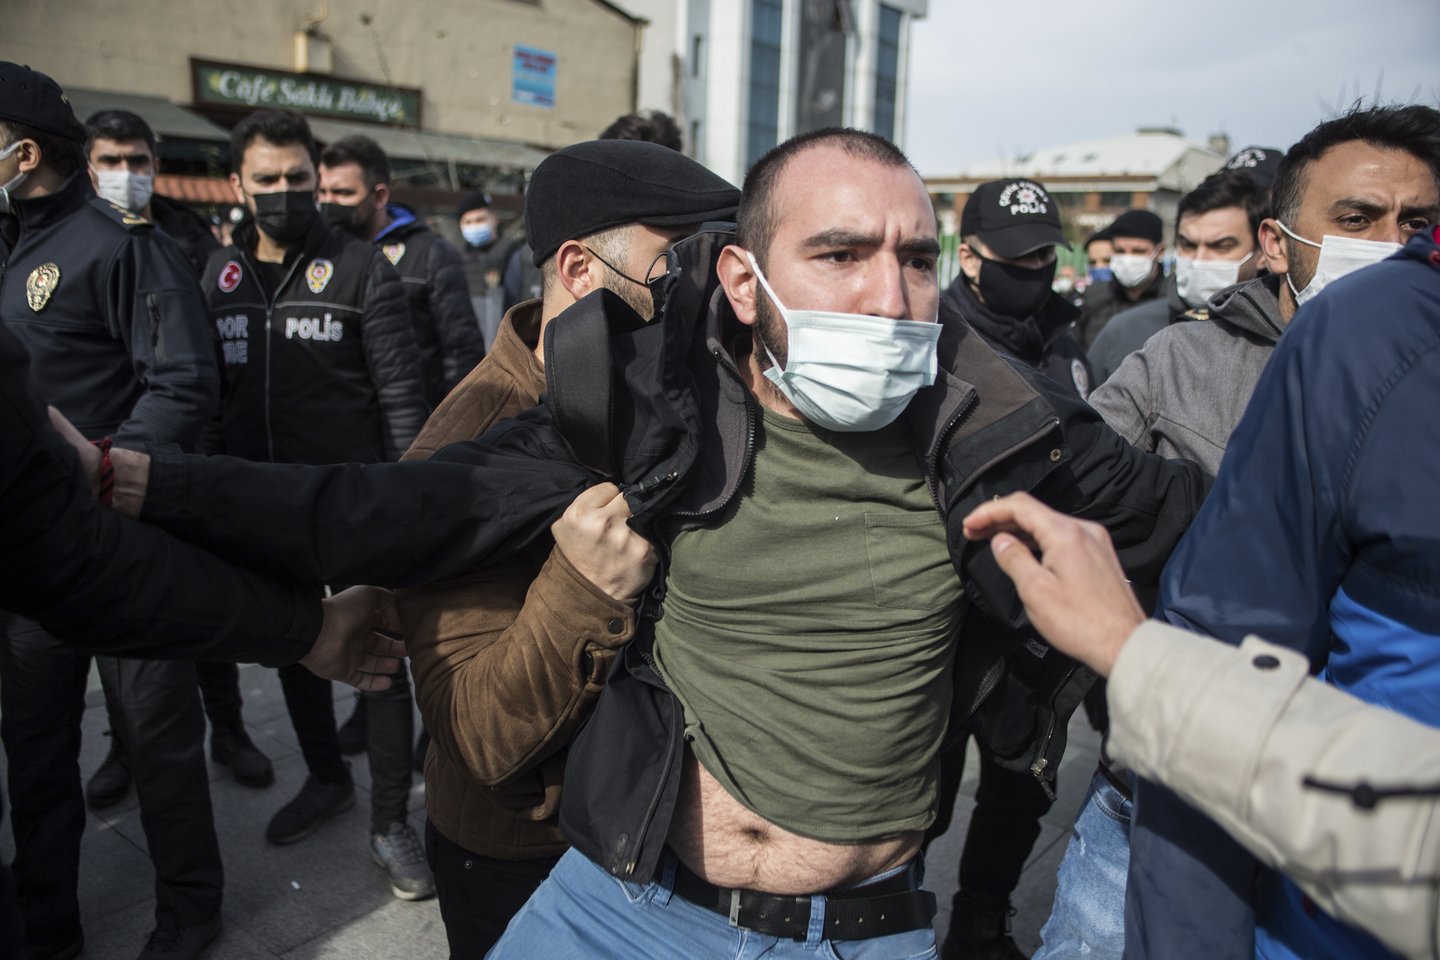  Turkijos policija pirmadienį sulaikė 718 žmonių per reidus 40-yje miestų, įtariant šiuos asmenis ryšiais su uždrausta kurdų kovotojų grupe, kaltinama 13 turkų nužudymu Irako šiaurėje.<br> AP/Scanpix nuotr.